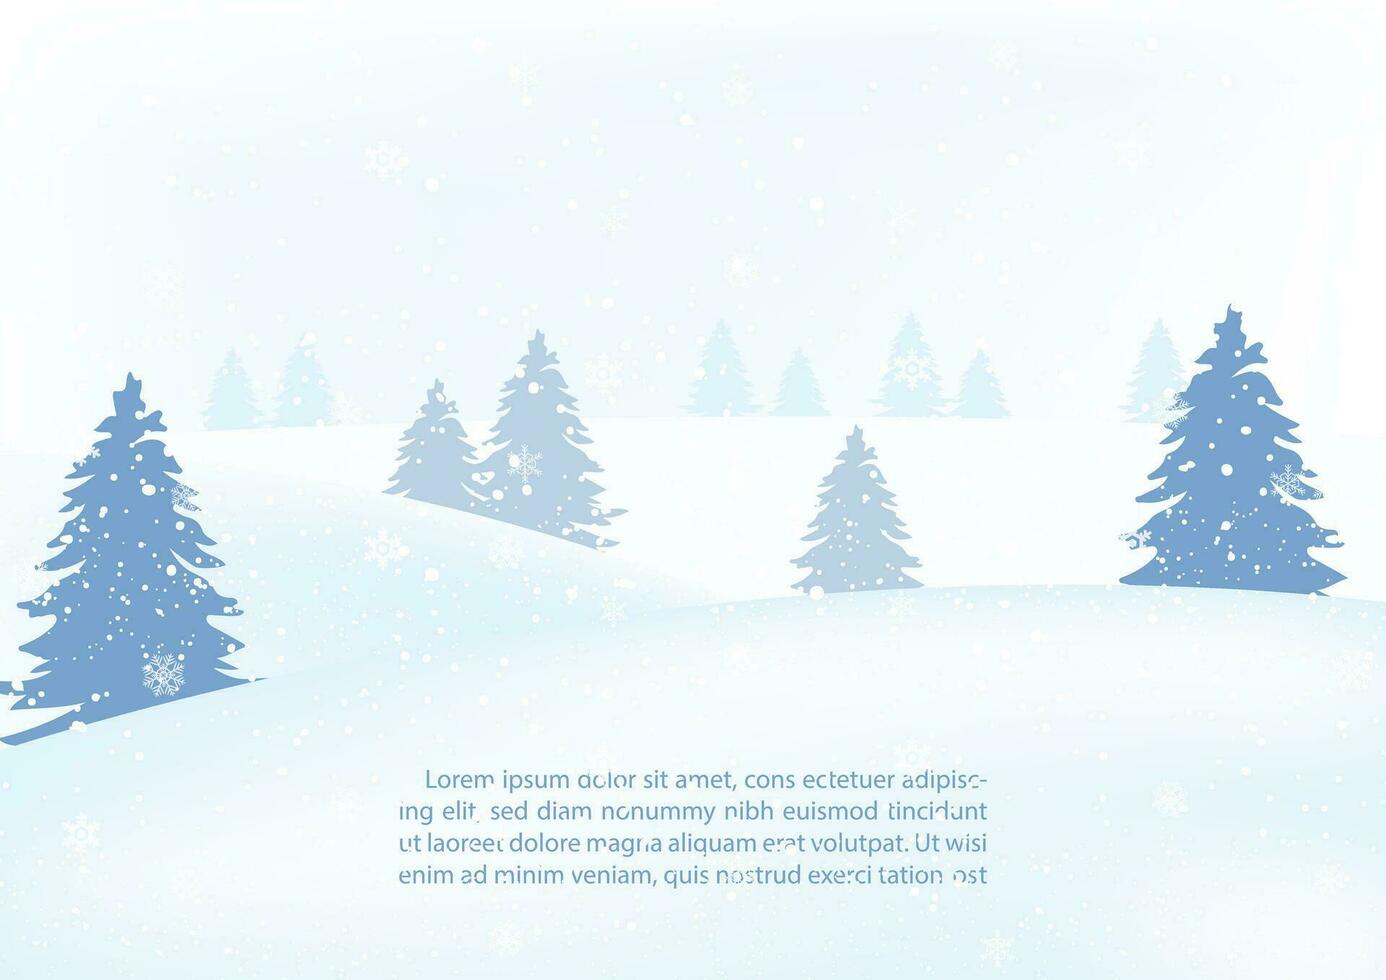 landskap vinter- och snö faller med tall träd och exempel texter på dimmig och ljus blå bakgrund. vektor